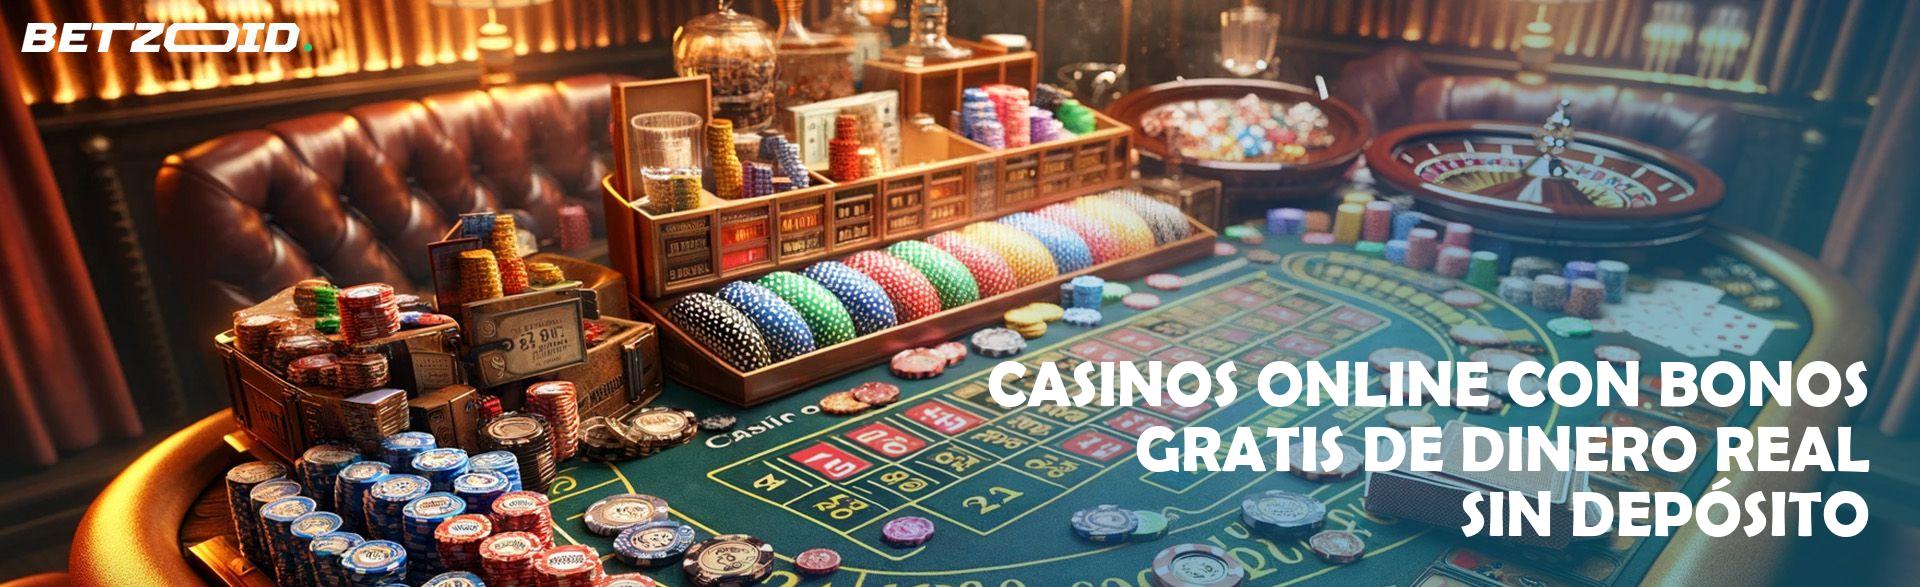 Bonos emocionantes en casinos en español